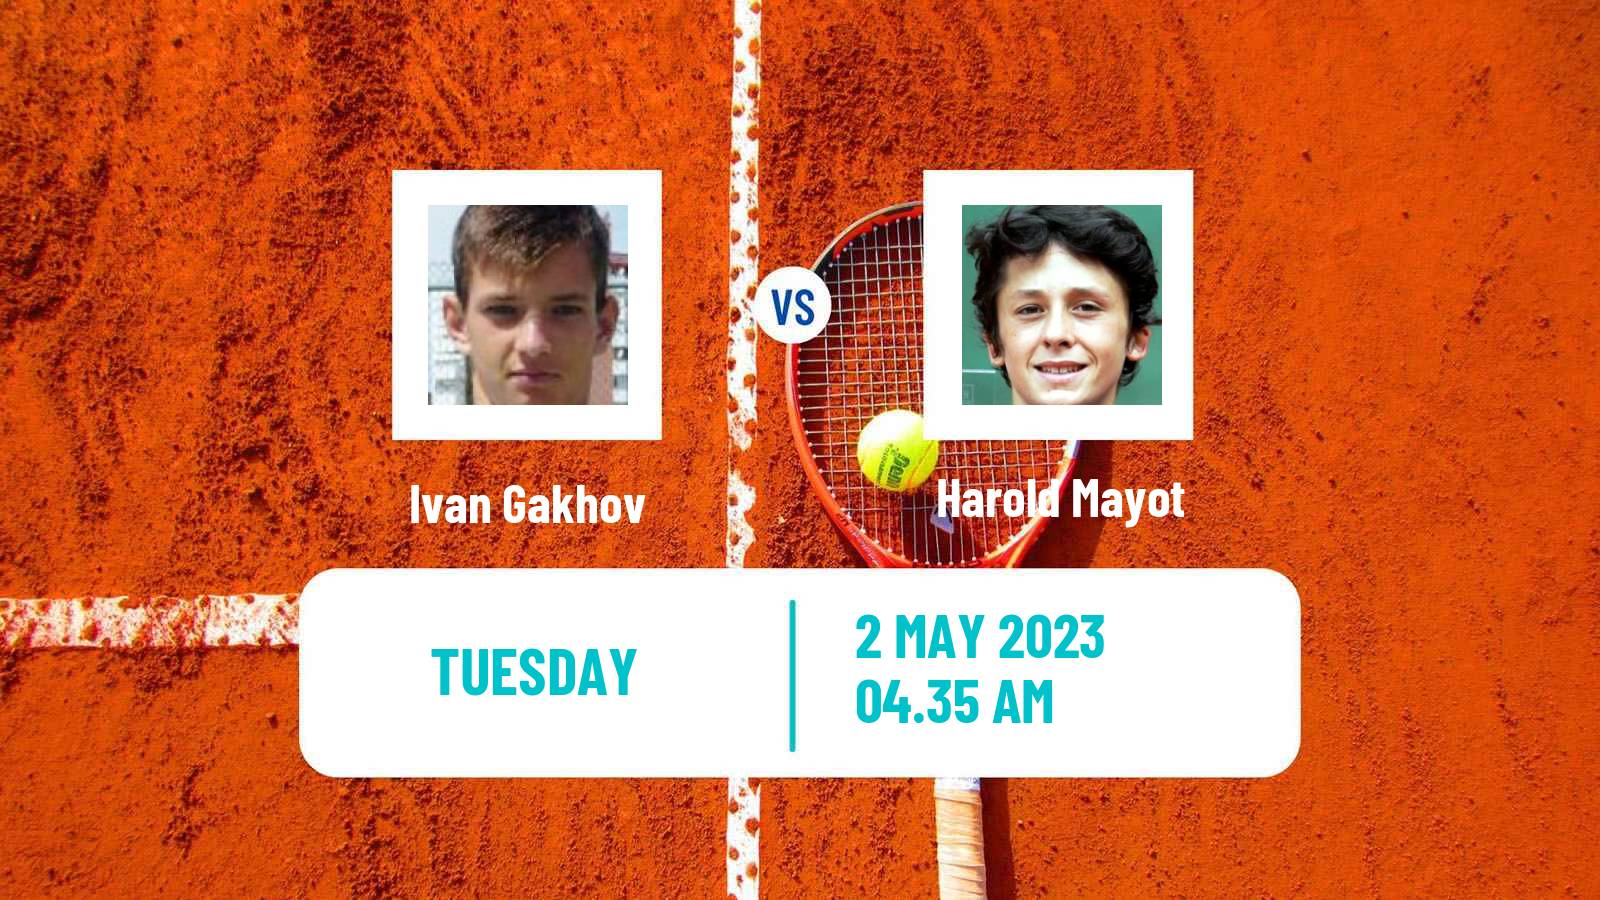 Tennis ATP Challenger Ivan Gakhov - Harold Mayot